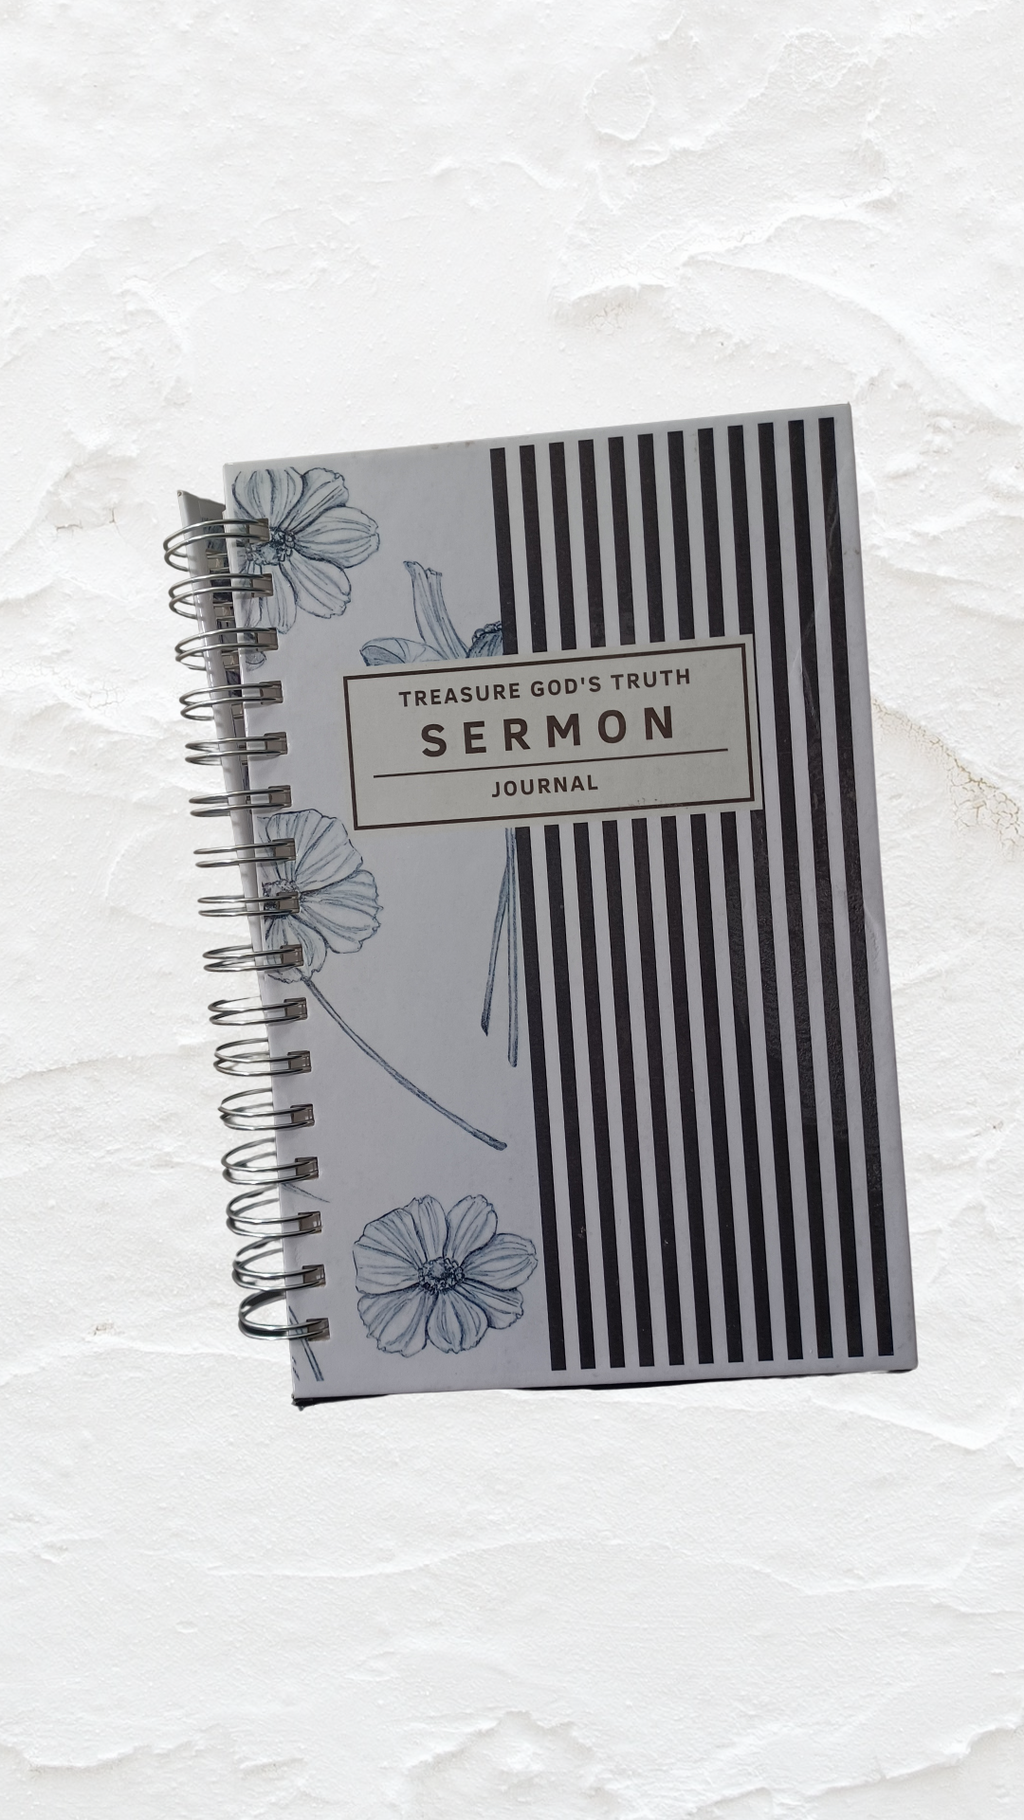 Sermon Journal